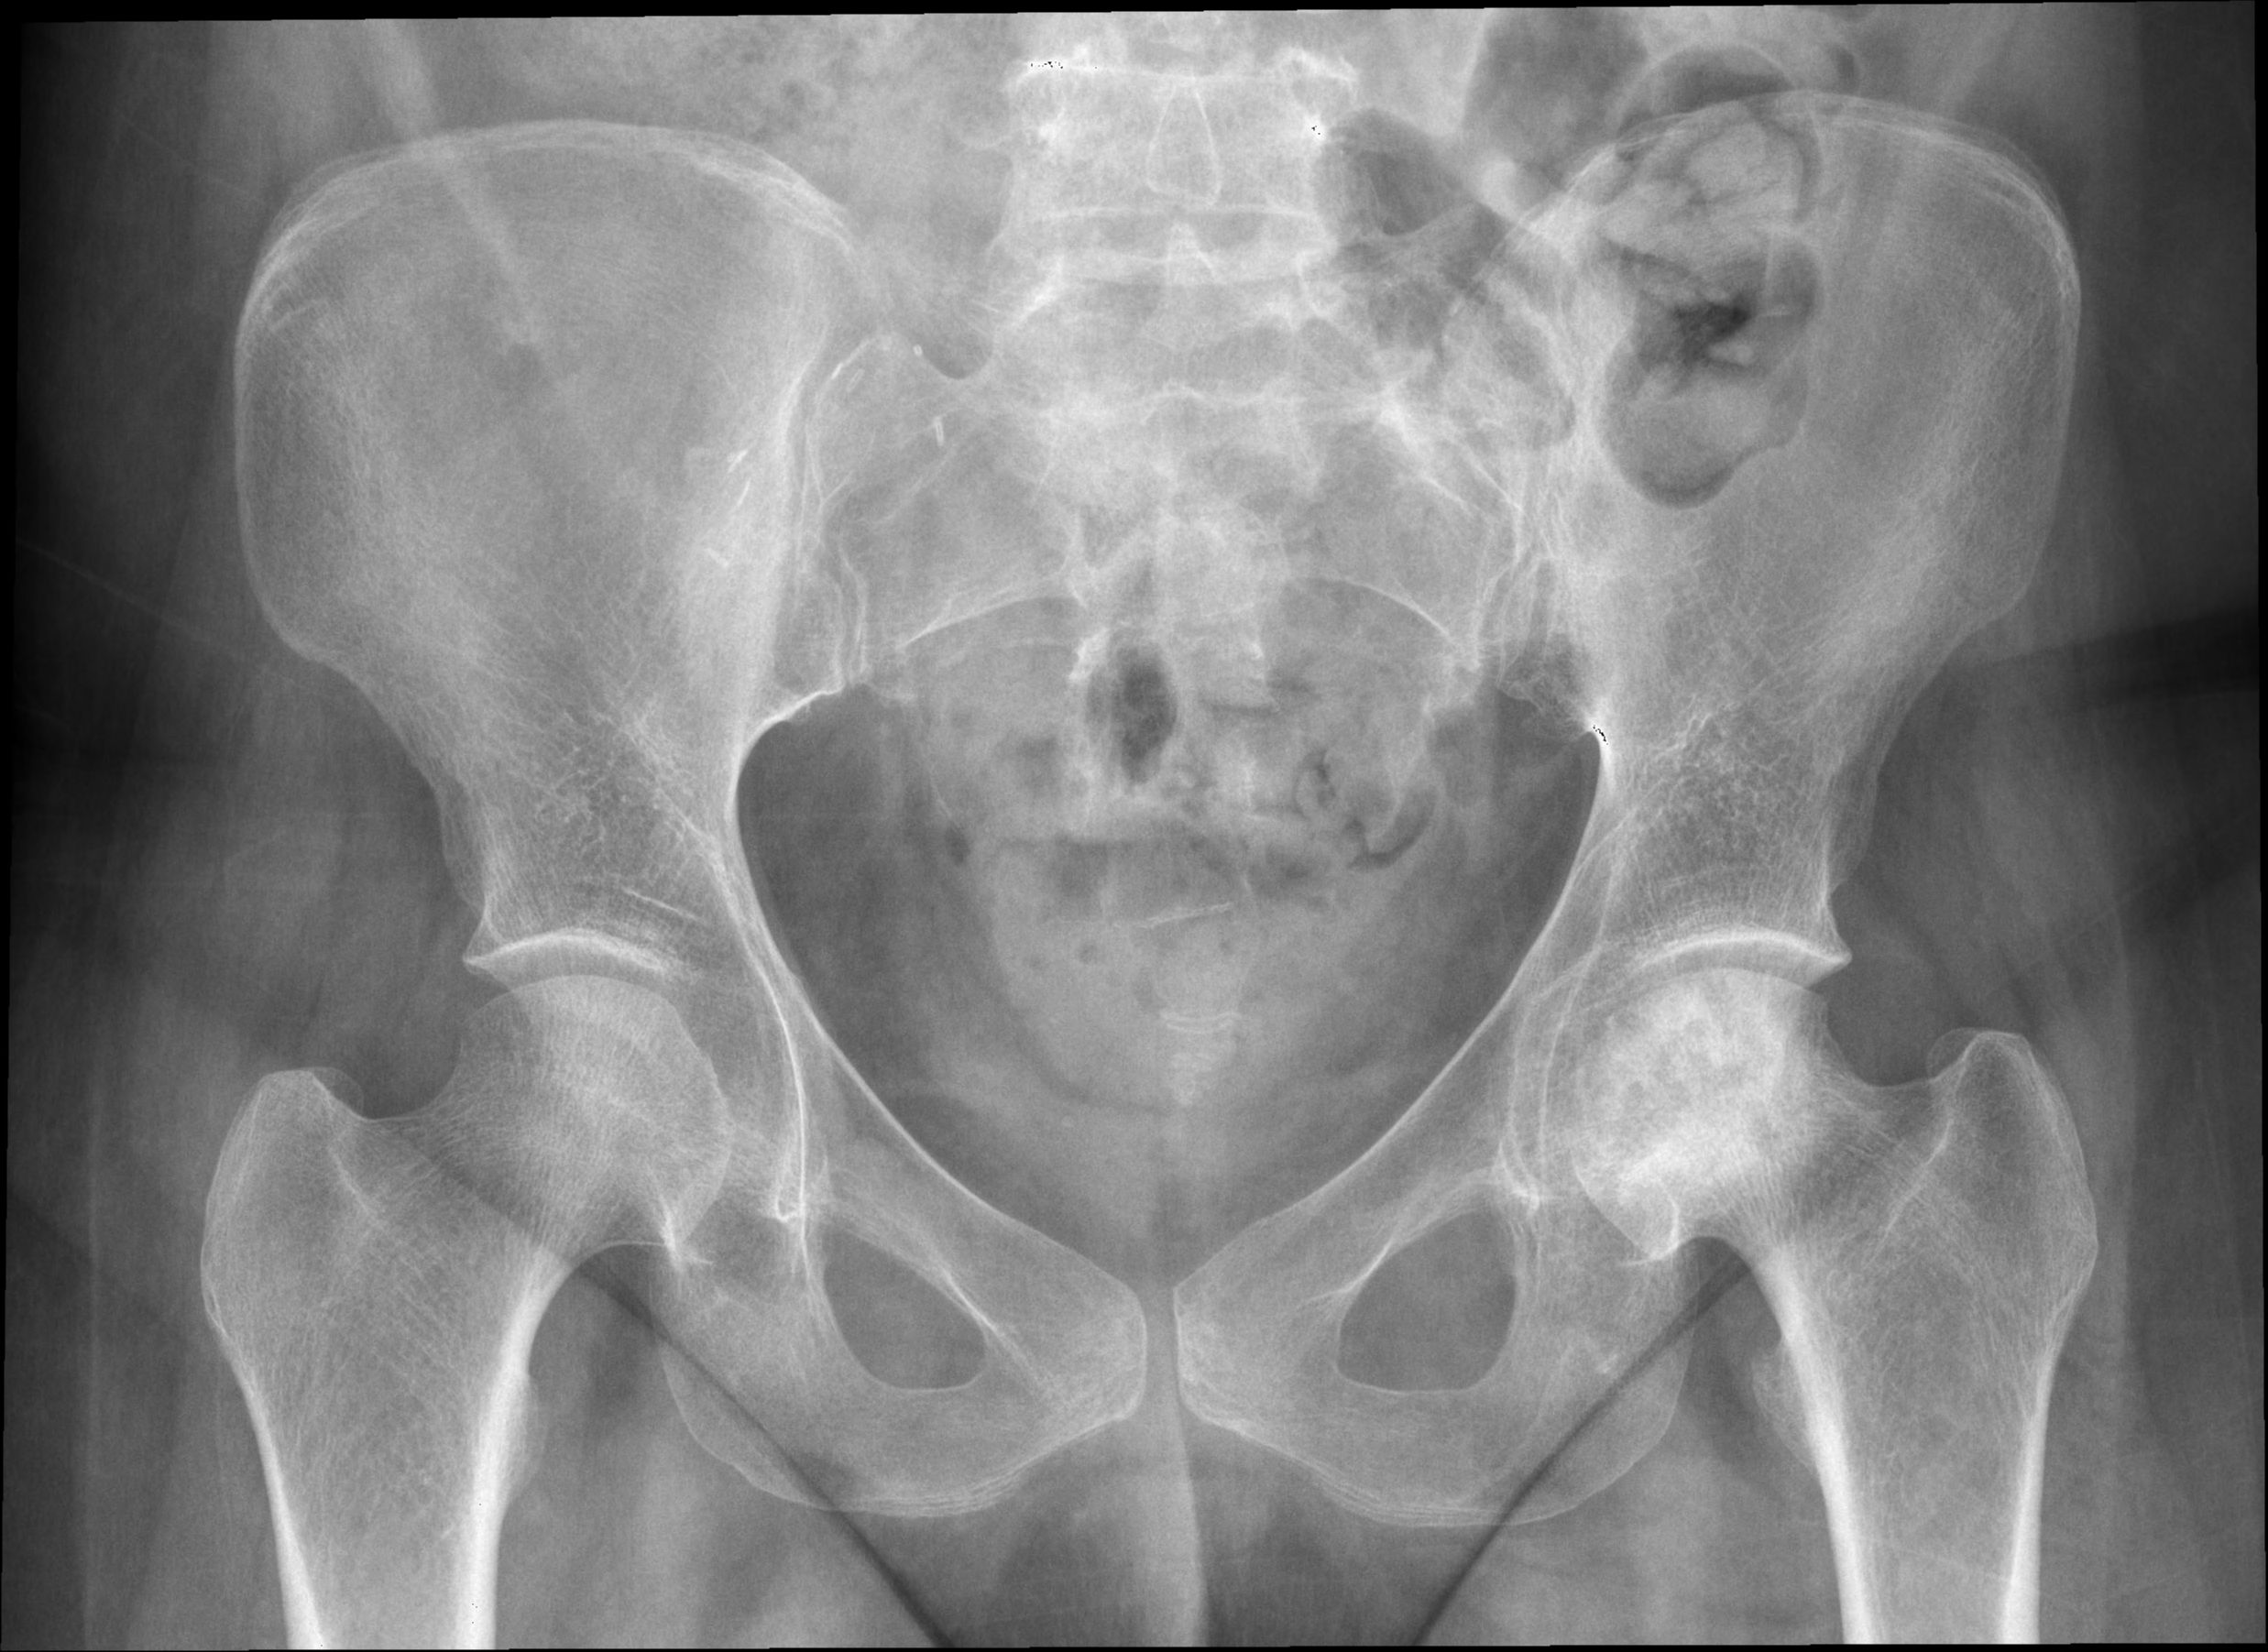 coloana vertebrală și site ul bolilor articulare artroza deformantă a tratamentului medicamentos pentru genunchi